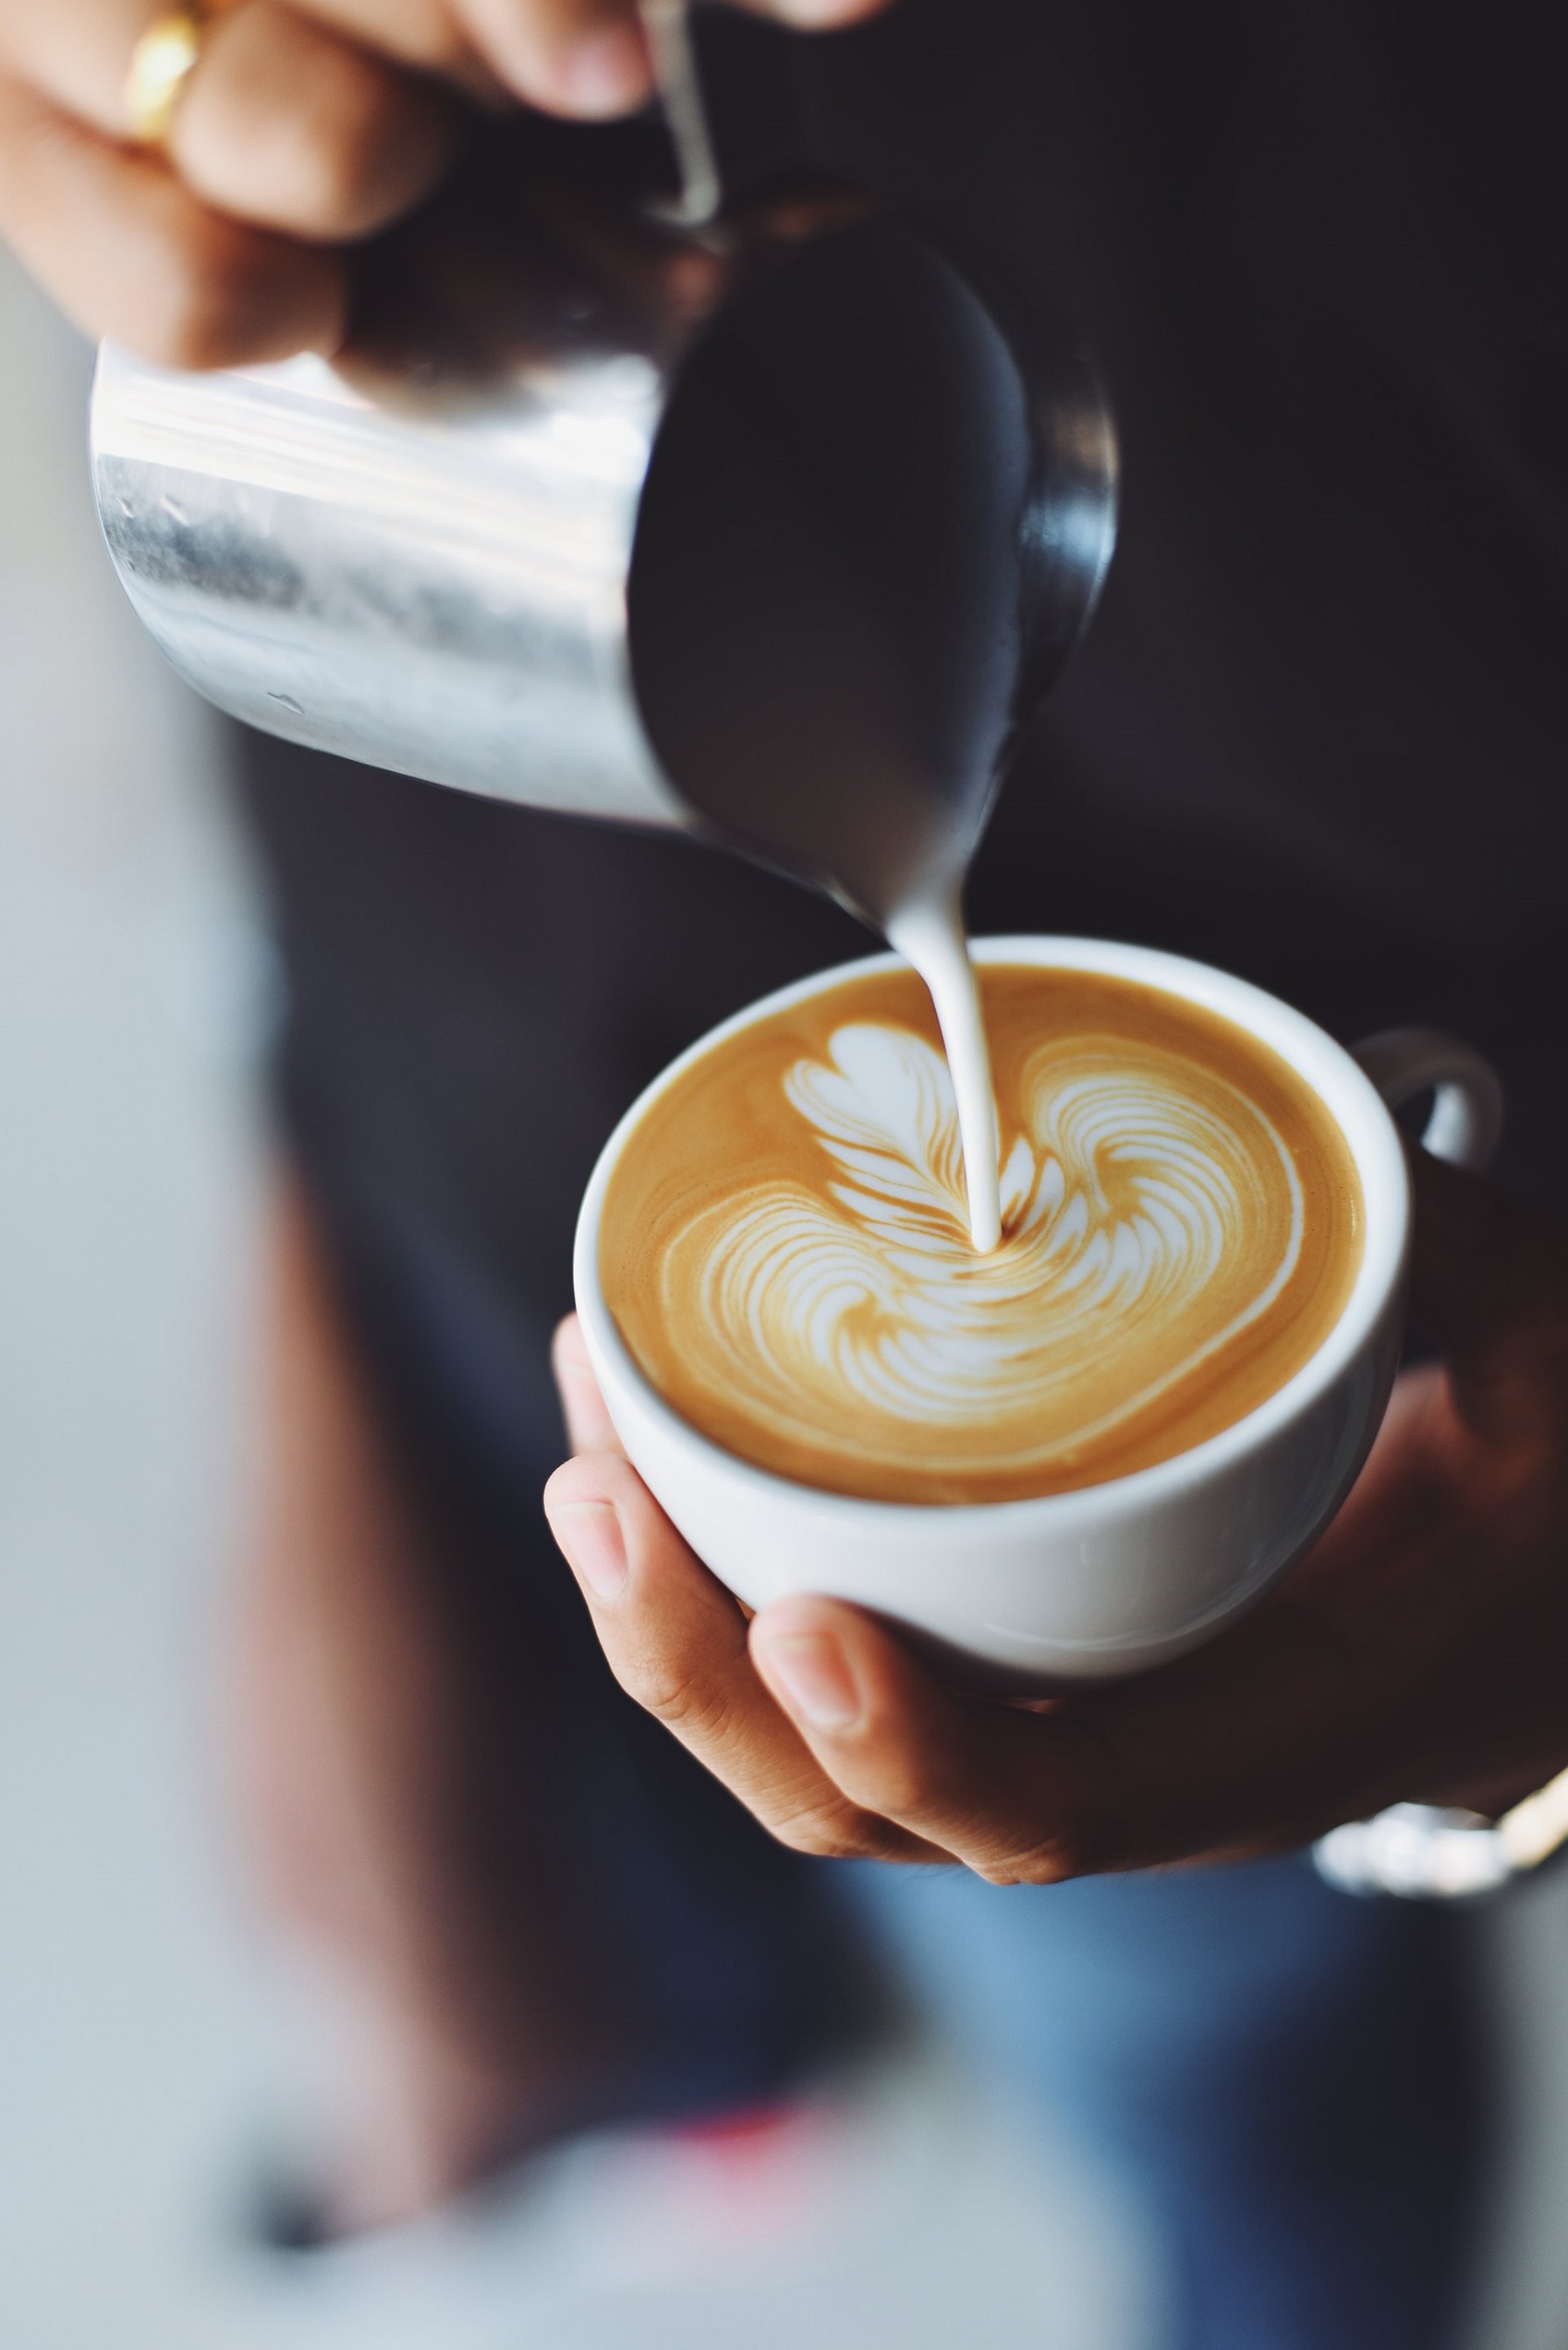 Latte art – wzory na kawie, które cieszą. Jak zacząć przygodę z latte art?